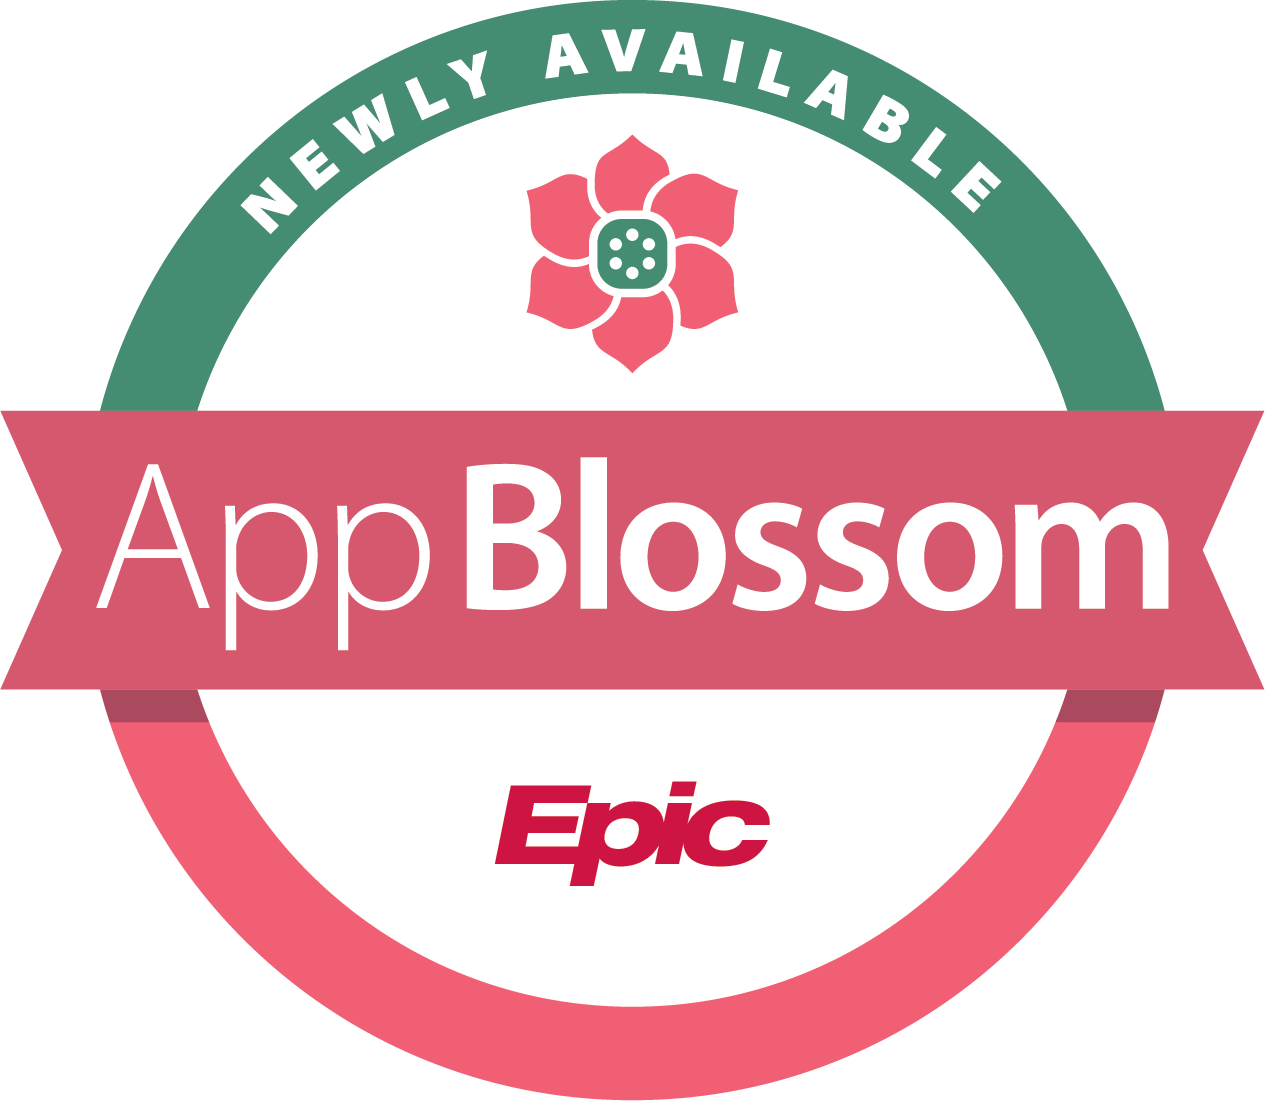 Epic App Blossom